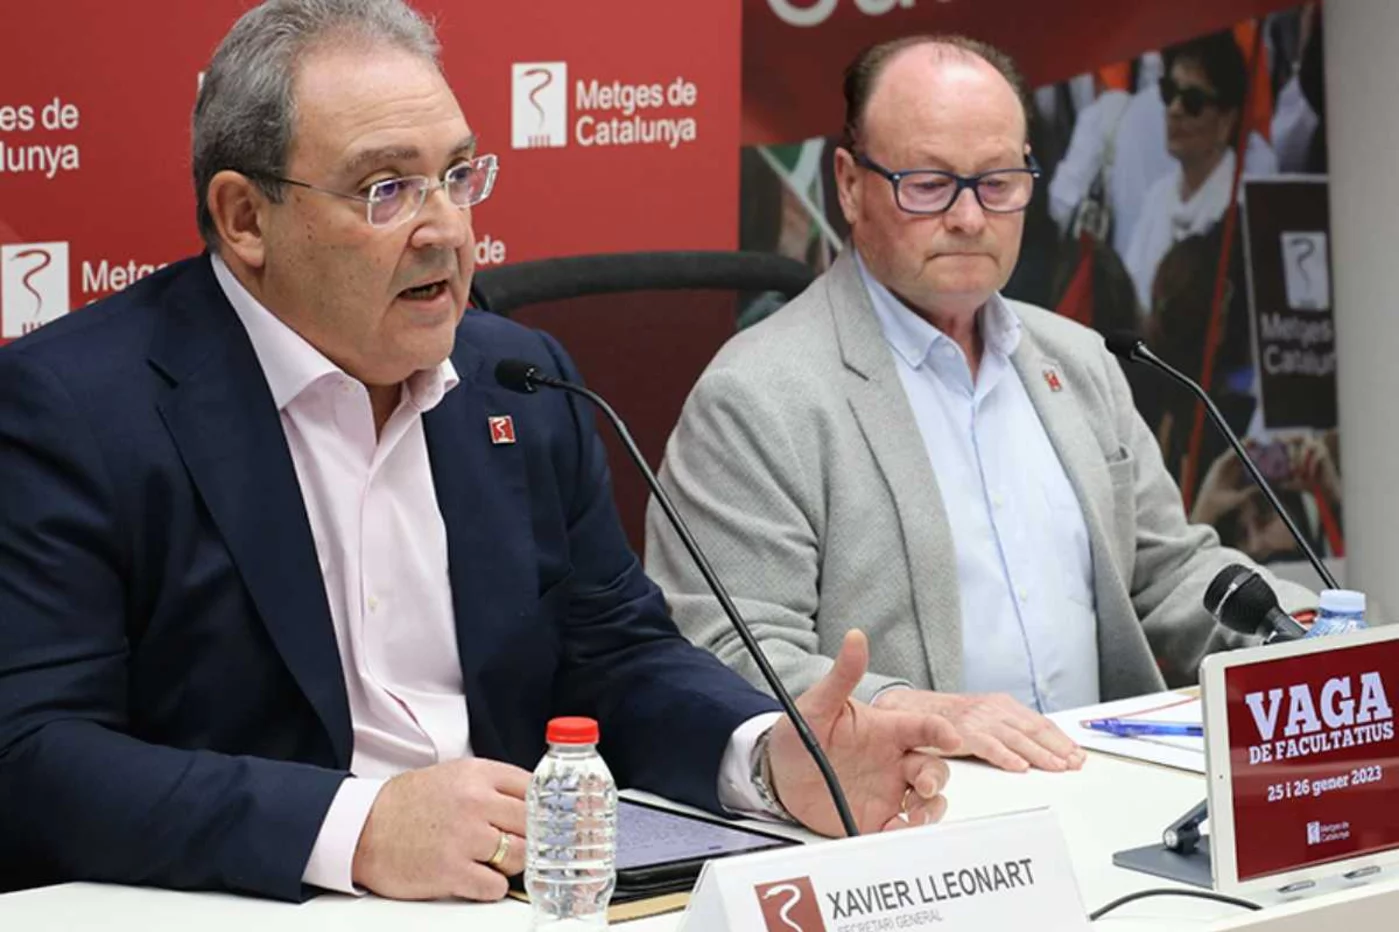 Xavier Lleonart y Jordi Cruz han anunciado en rueda de prensa la huelga de dos días en enero. Foto: METGES DE CATALUNYA